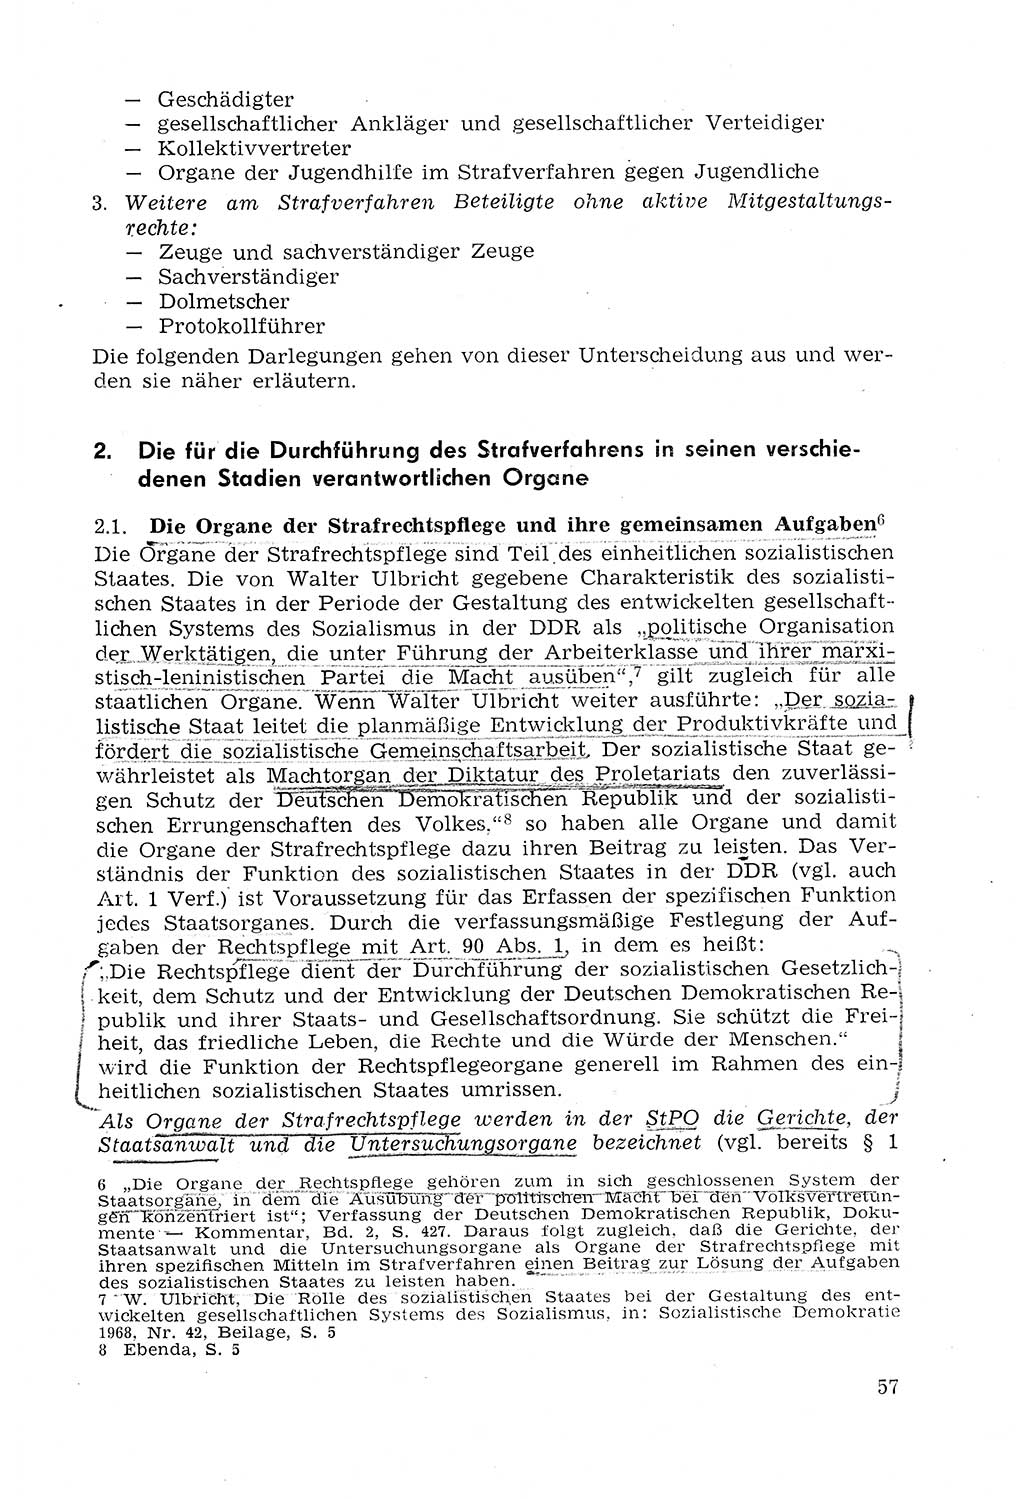 Strafprozeßrecht der DDR (Deutsche Demokratische Republik), Lehrmaterial 1969, Seite 57 (Strafprozeßr. DDR Lehrmat. 1969, S. 57)